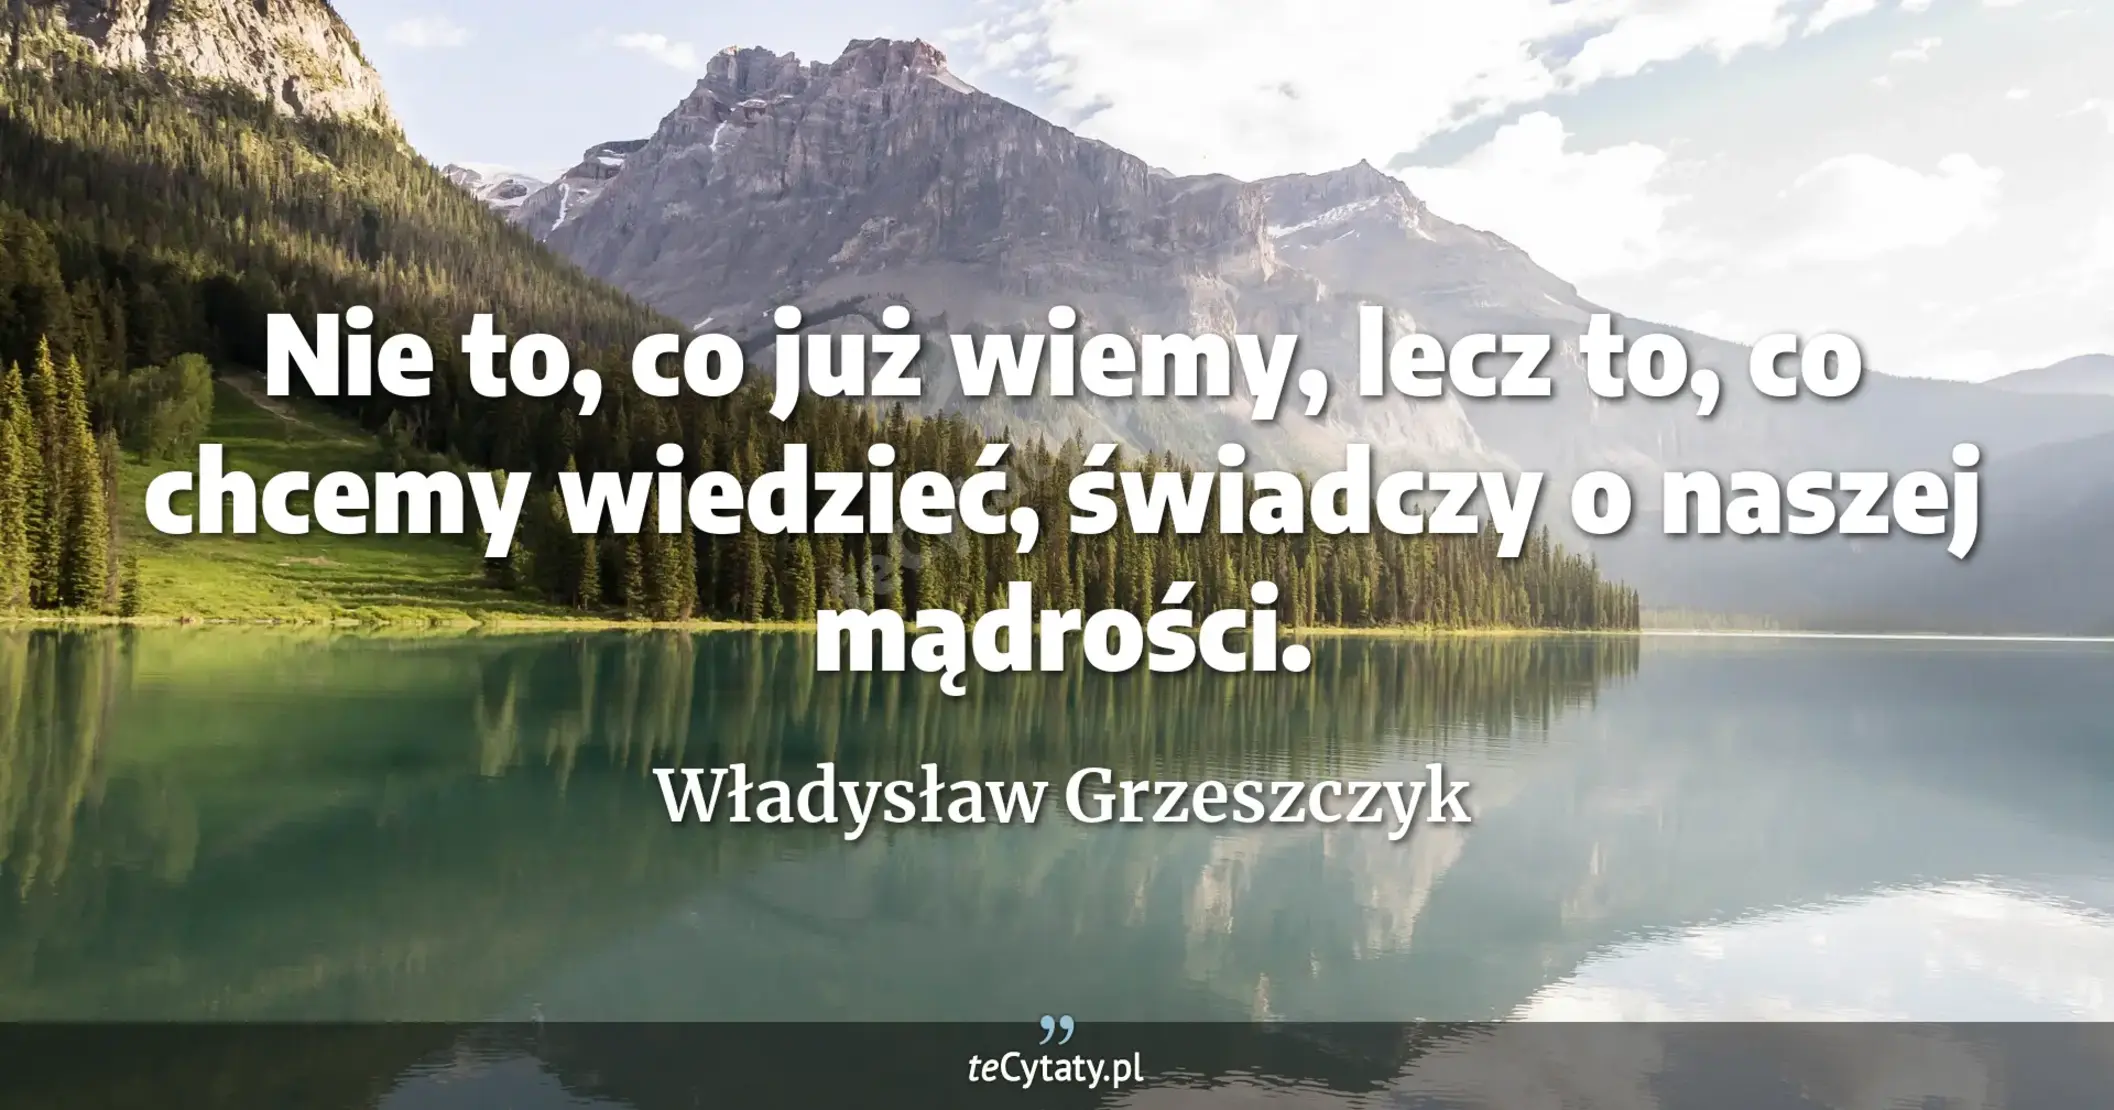 Nie to, co już wiemy, lecz to, co chcemy wiedzieć, świadczy o naszej mądrości. - Władysław Grzeszczyk